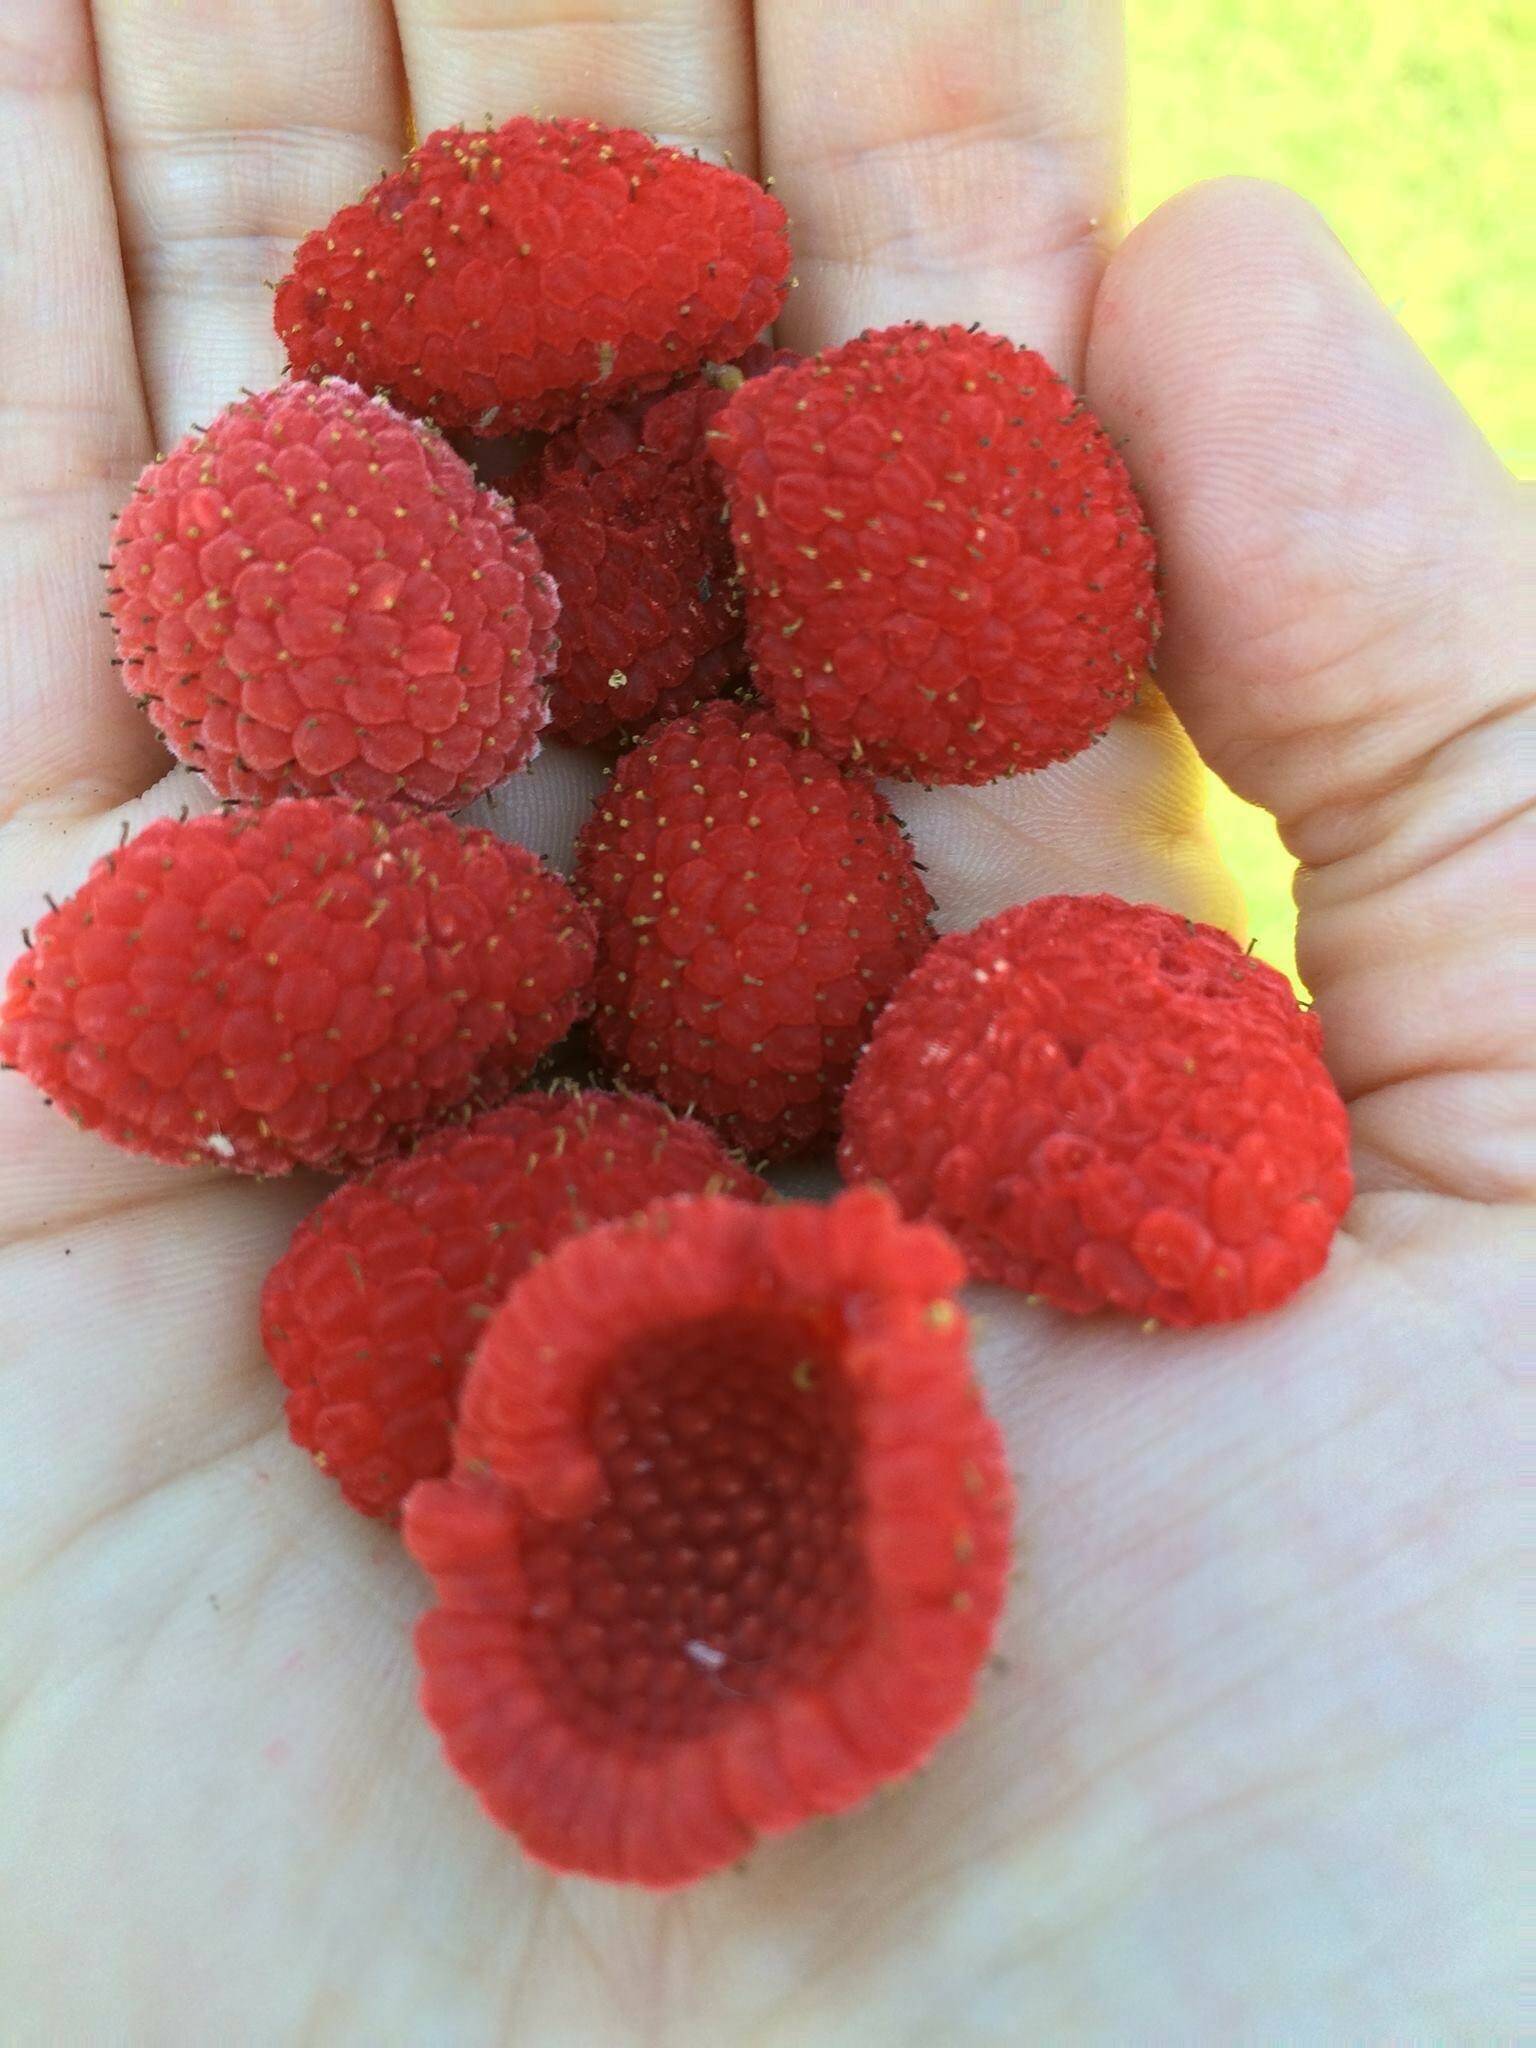 Thimblerries in Yeilk’ Vivian Mork’s hand.(Courtesy Photo / Yeilk’ Vivian Mork)